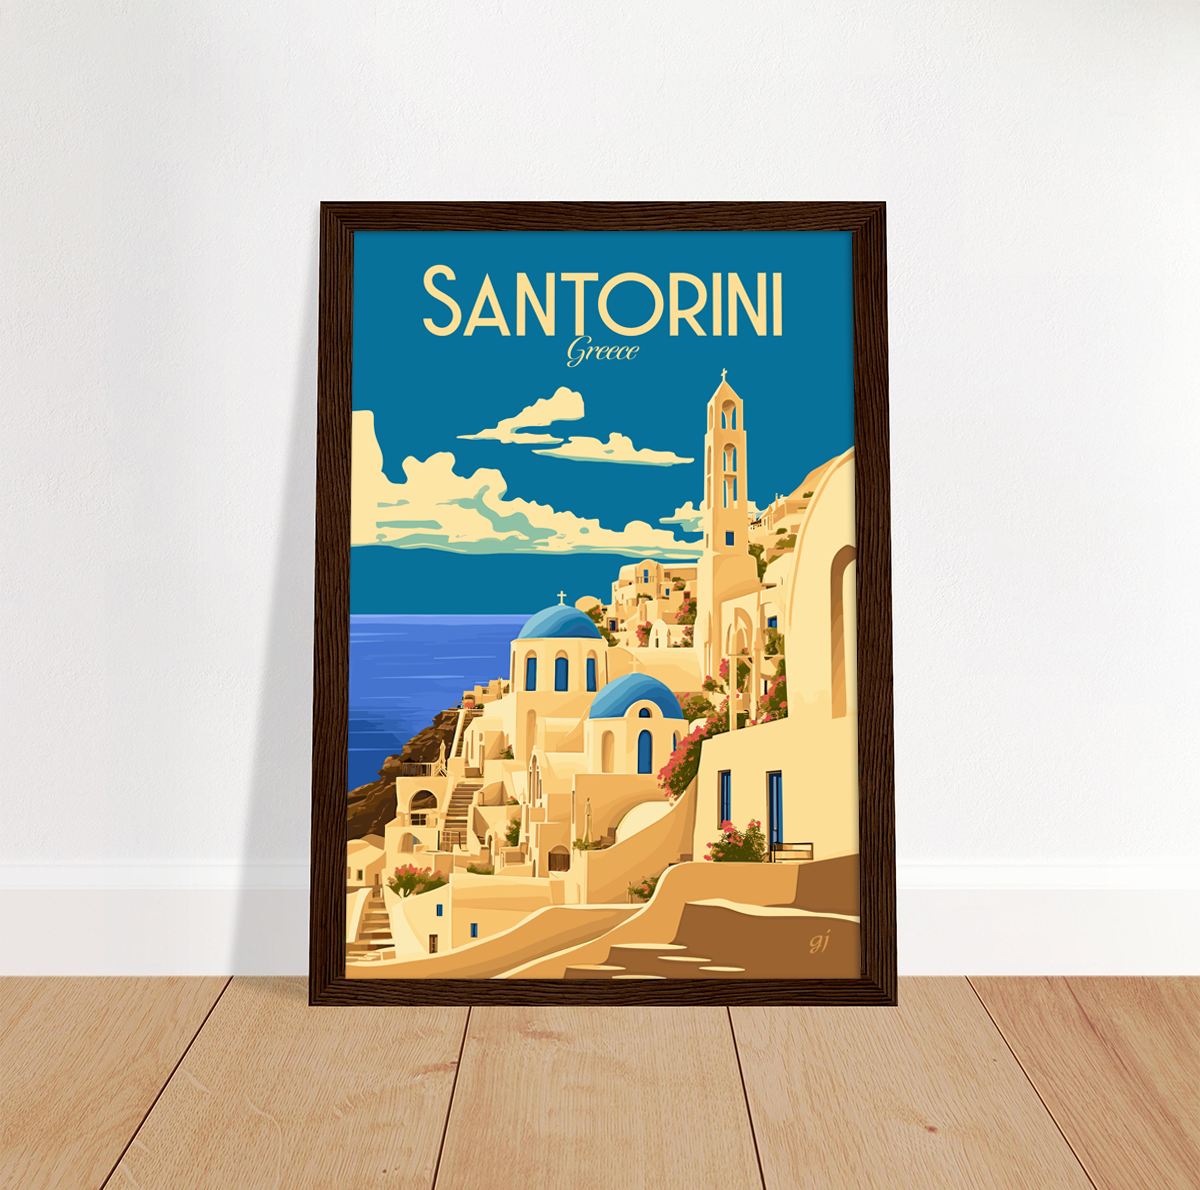 Santorini poster by bon voyage design